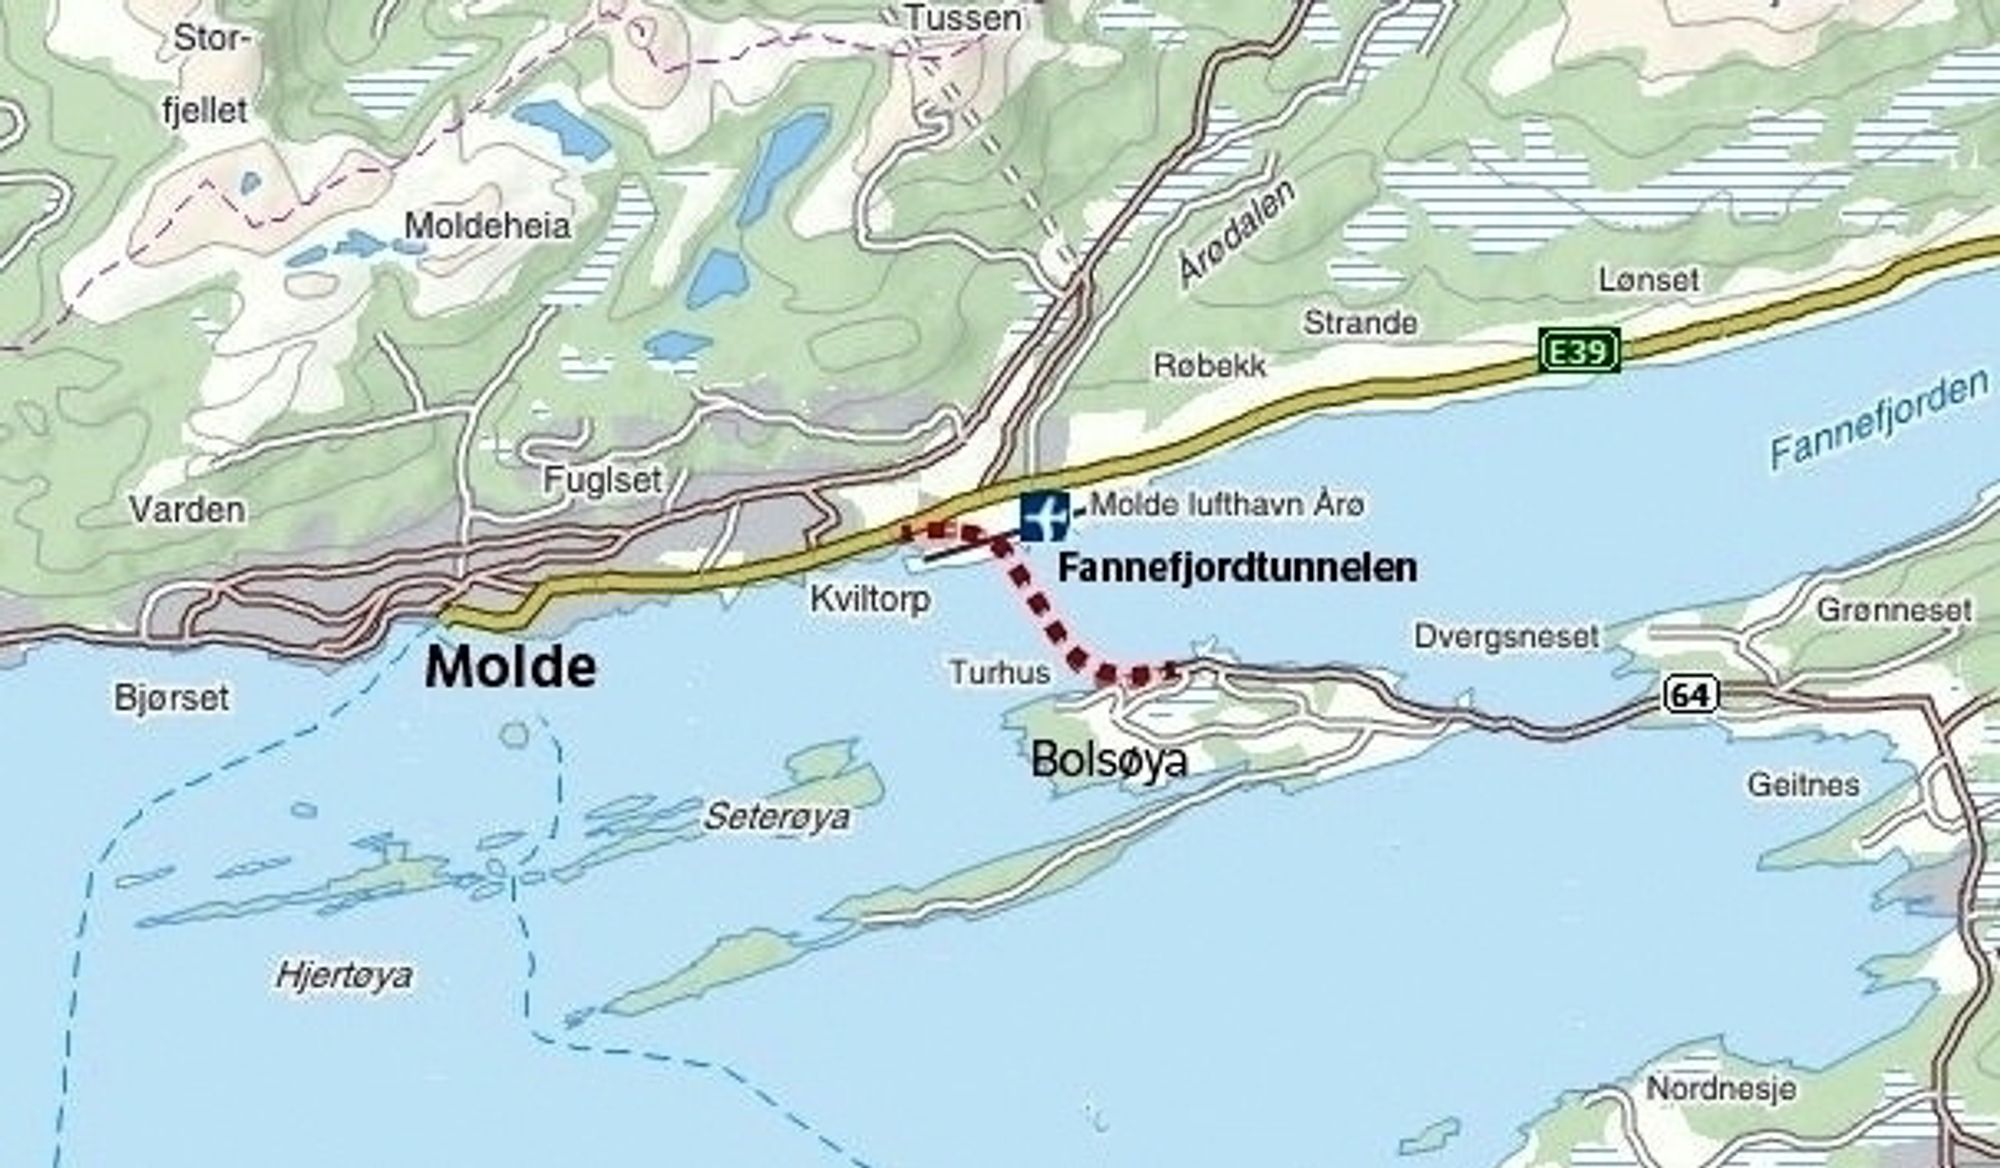 Trafikantene på fylkesveg 64 får en omveg på ca. en halv time mellom kl. 18 og kl. 6 mens Implenias folk oppgraderer Fannefjordtunnelen. (Ill.: Statens vegvesen